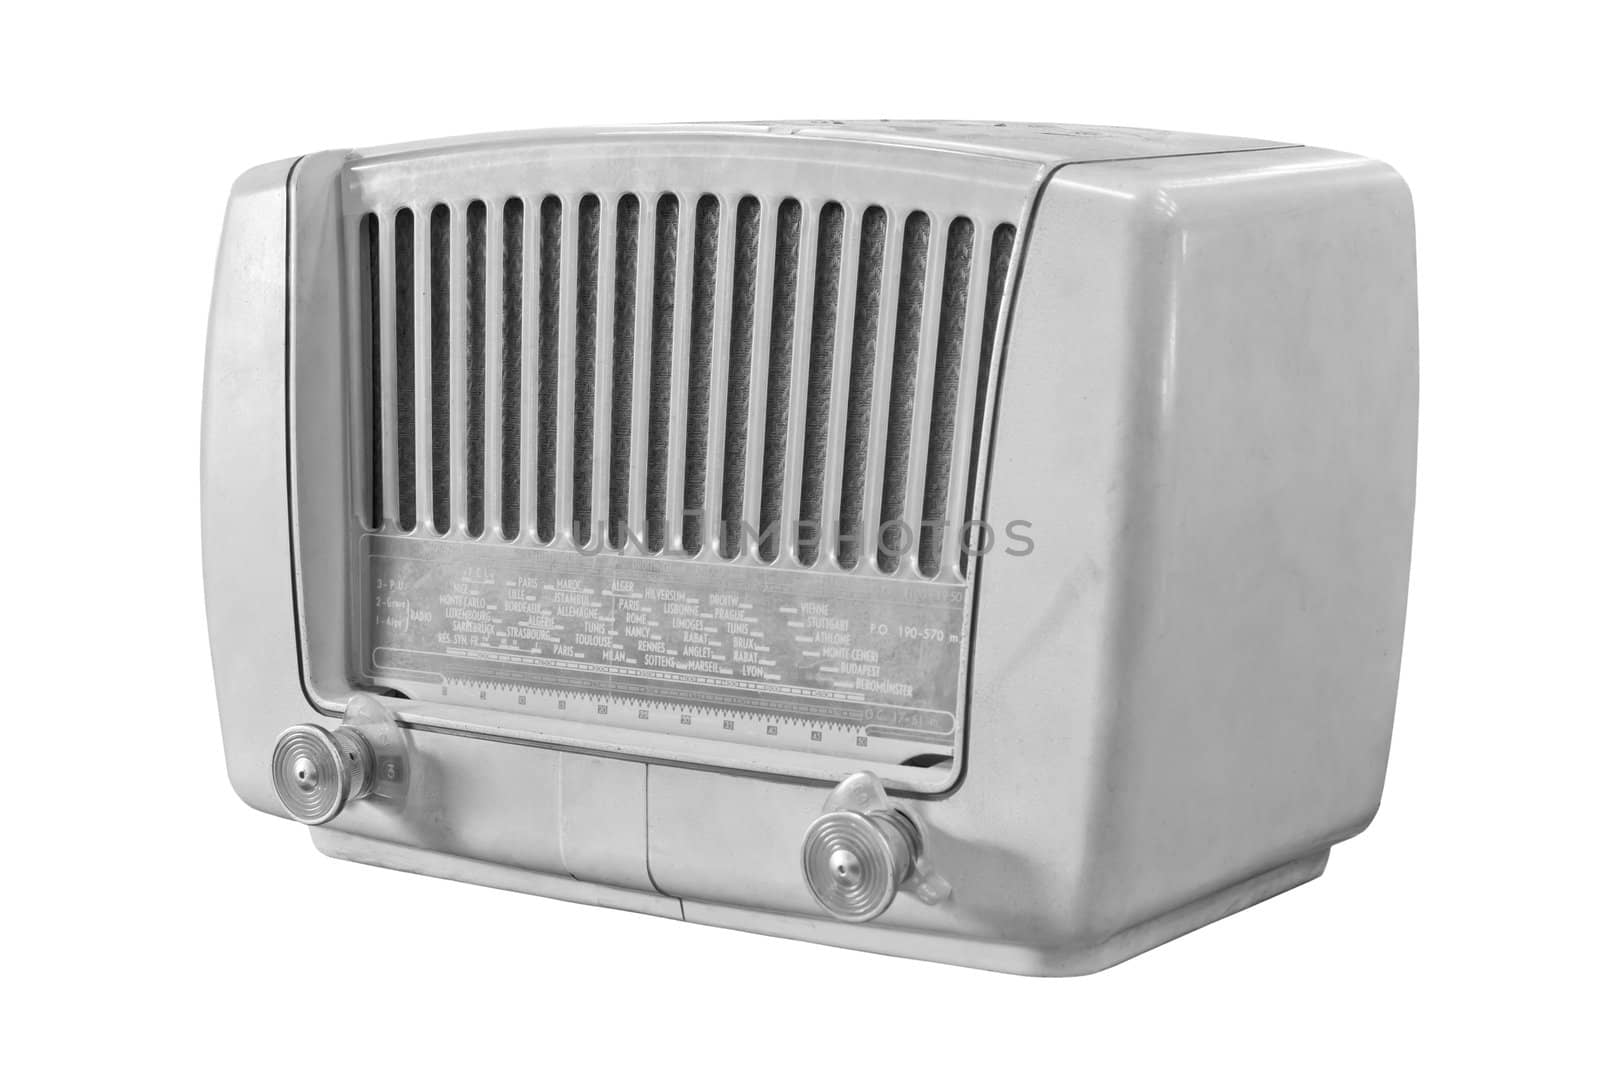 vintage radio isolated on white background